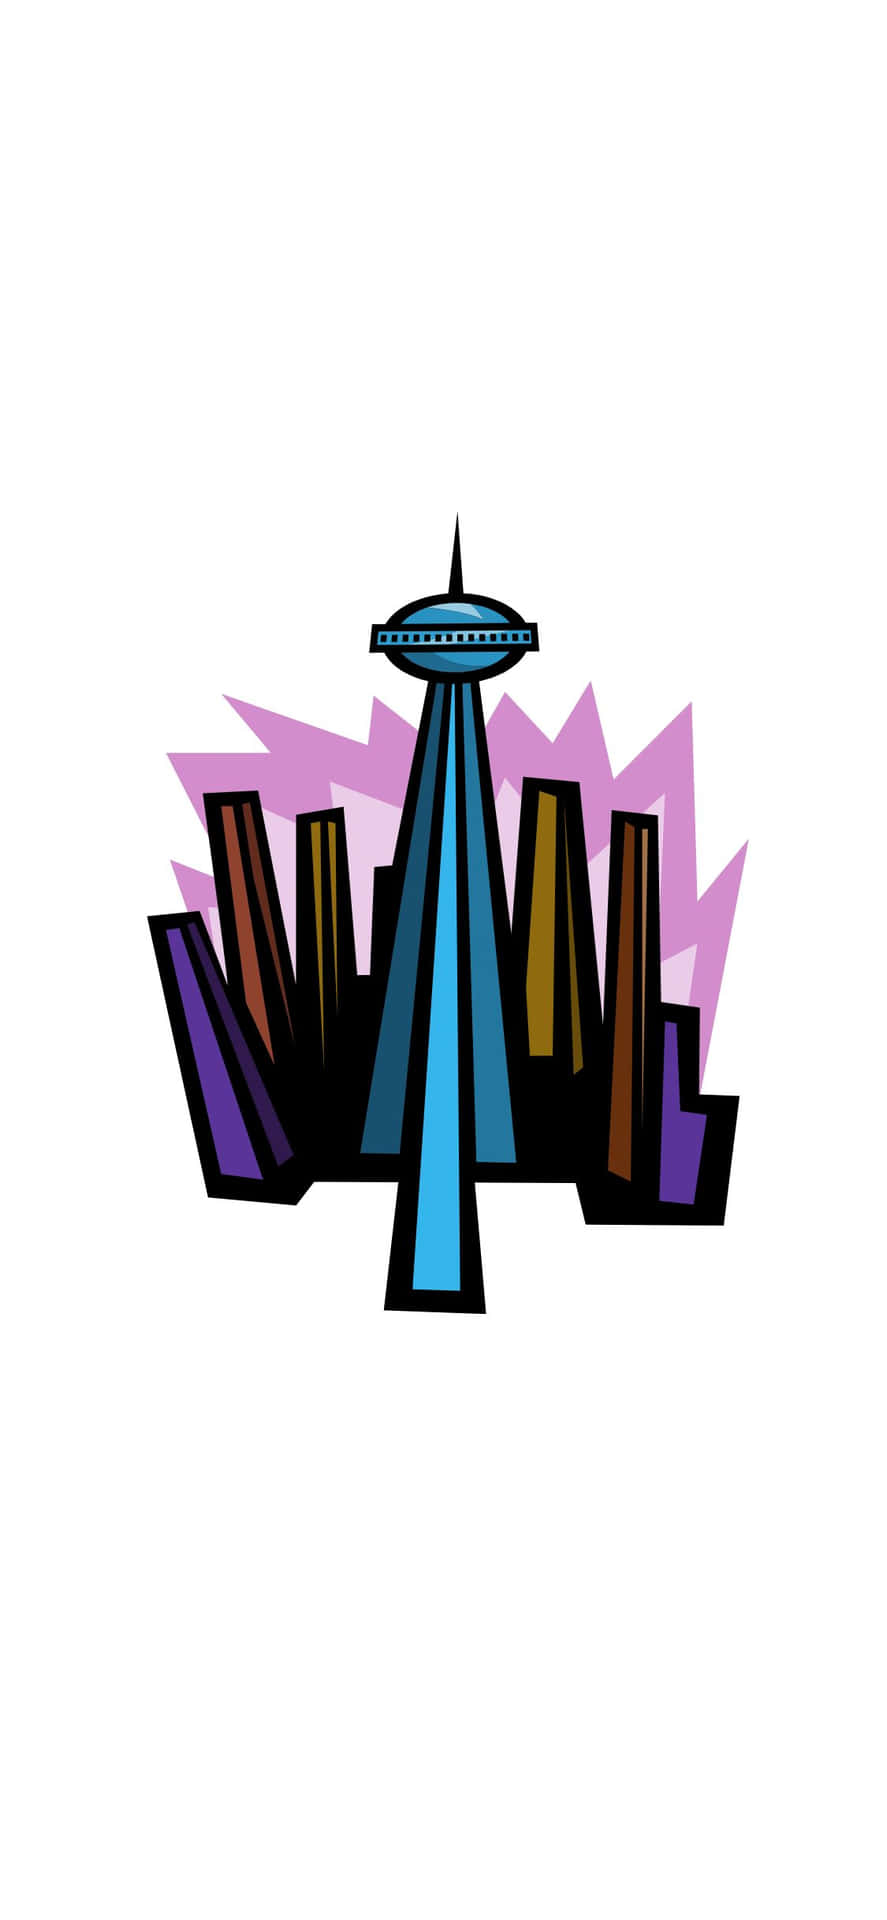 Nyd en malerisk udsigt over Seattle fra din Iphone X.